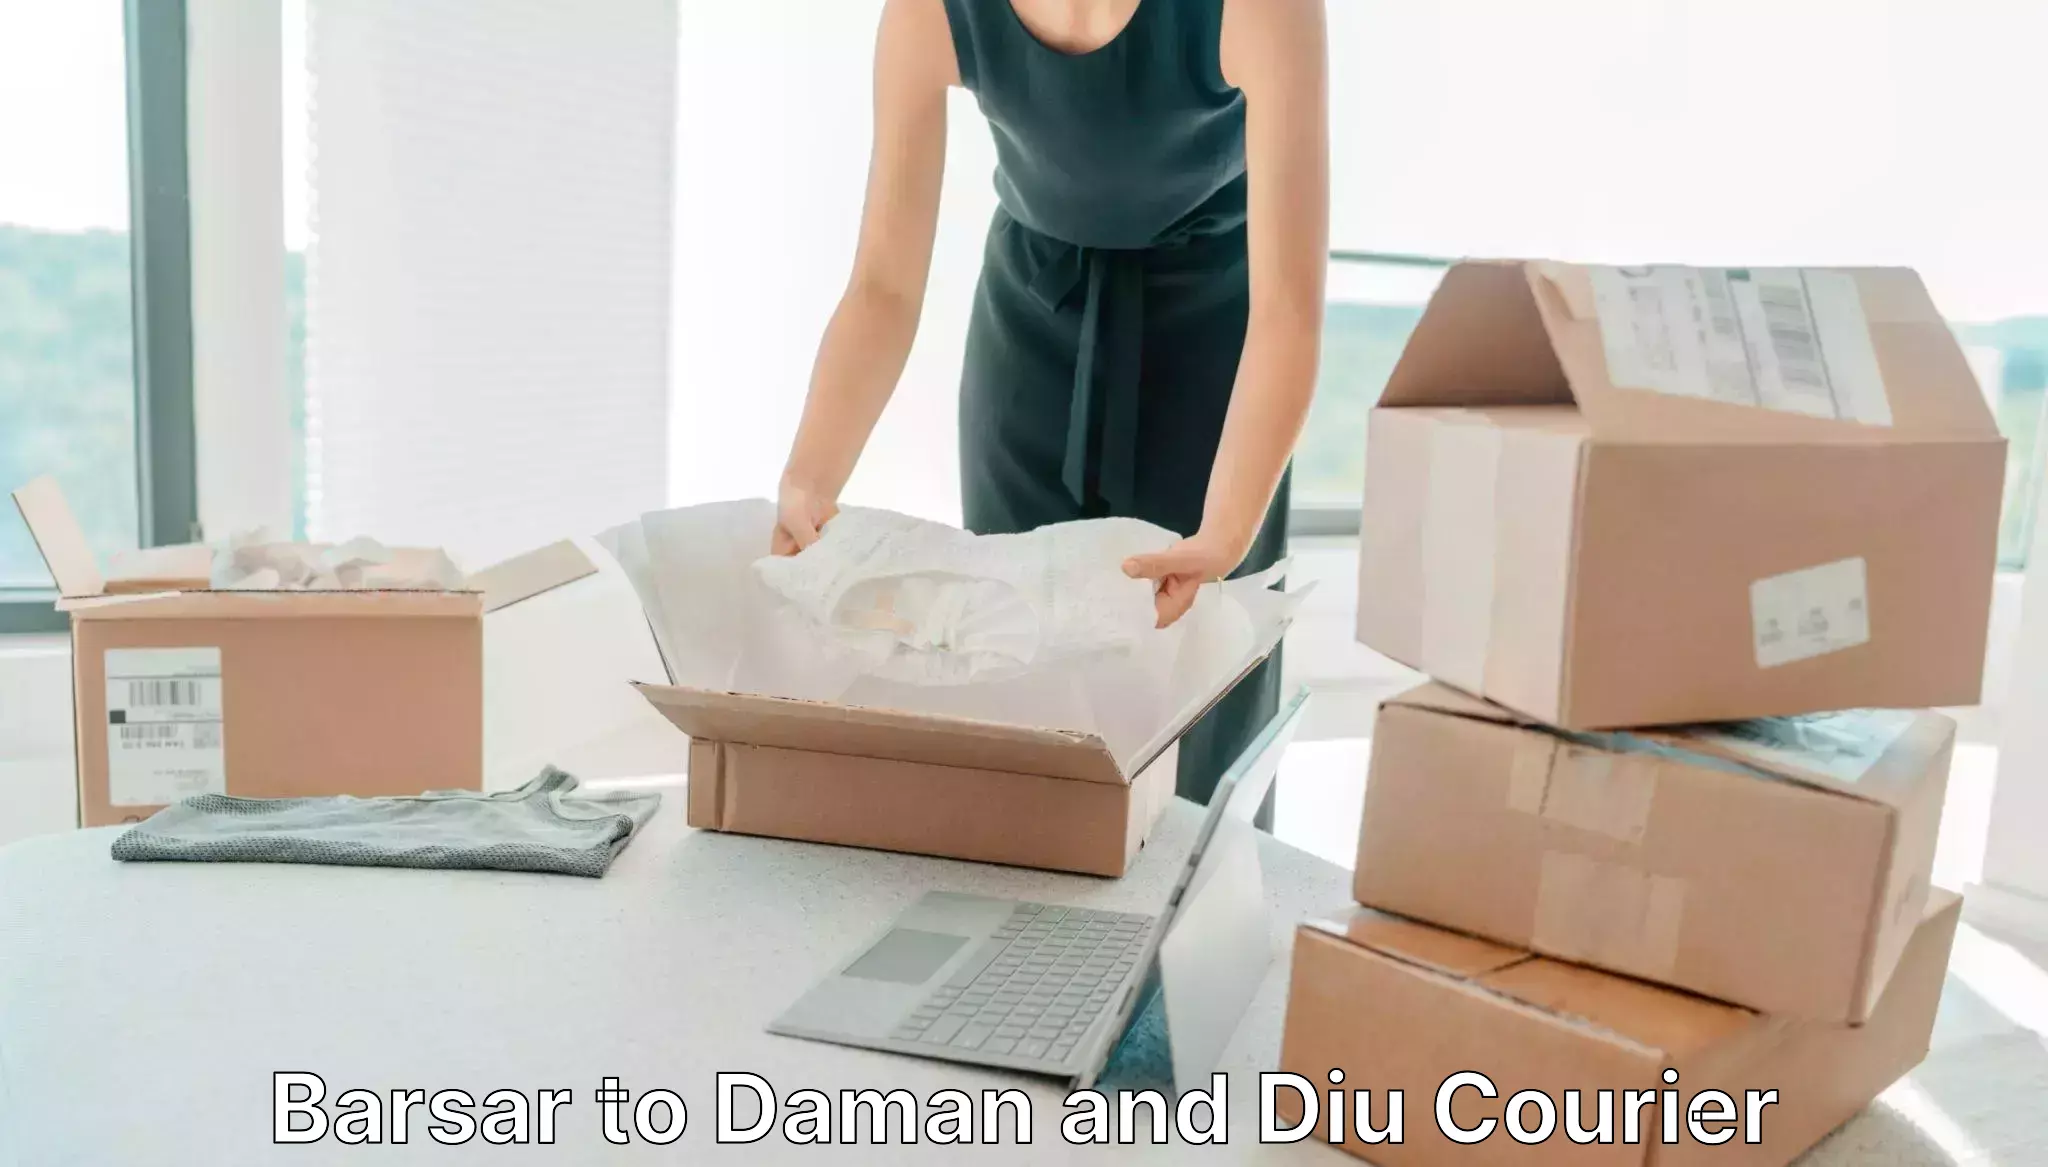 Custom courier strategies in Barsar to Diu